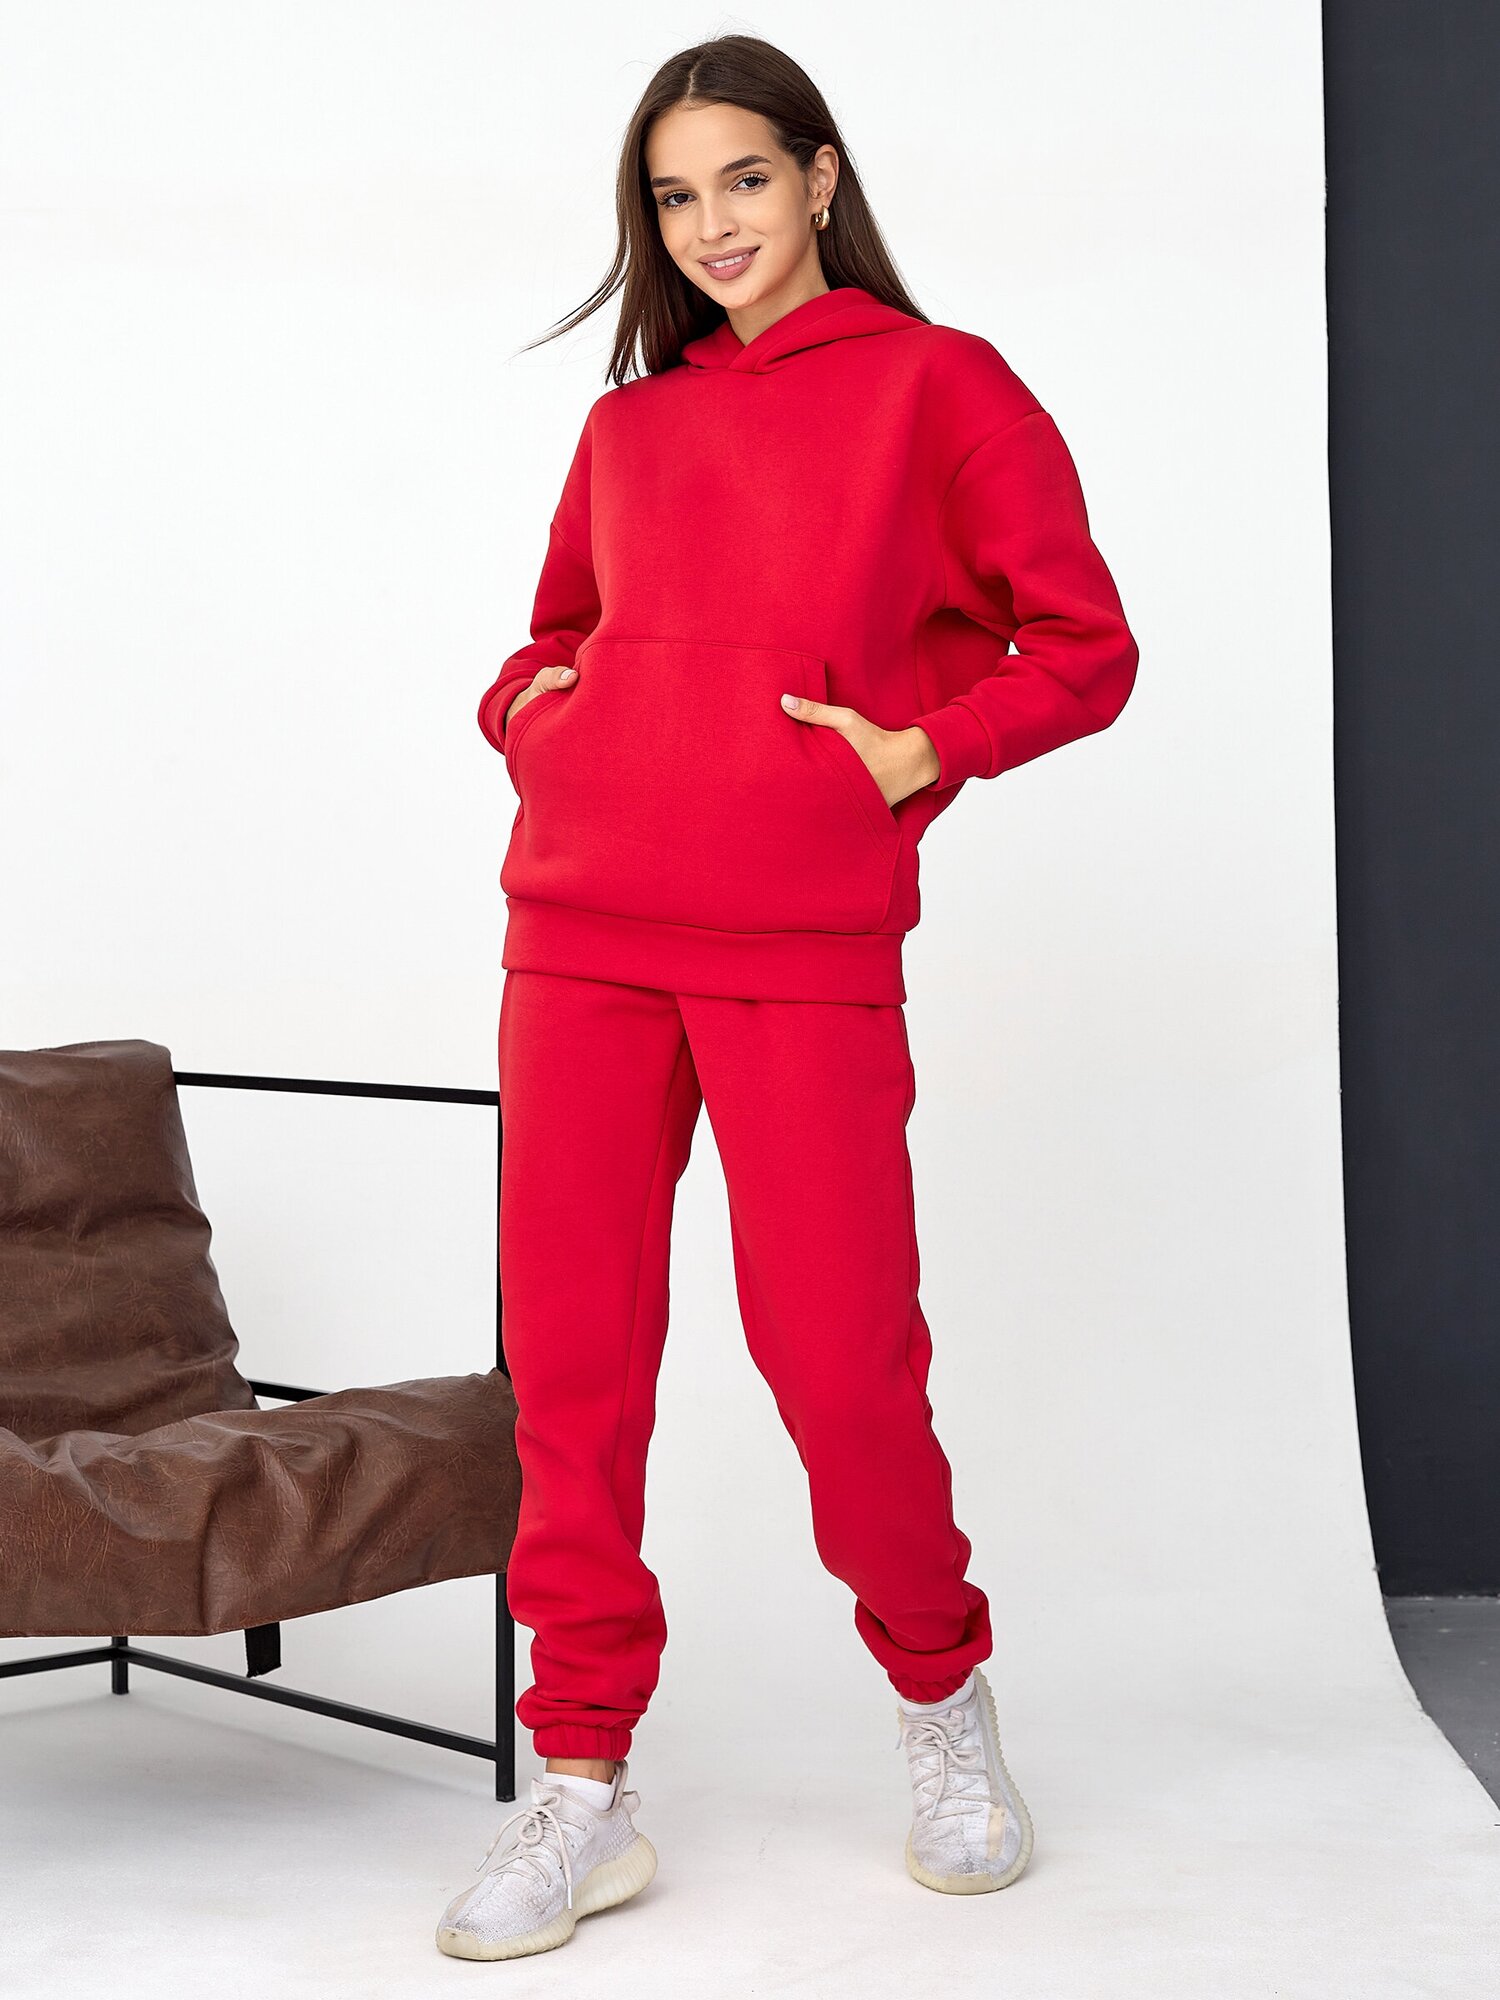 Костюм Промдизайн, толстовка и брюки, спортивный стиль, оверсайз, утепленный, размер 50, красный - фотография № 2